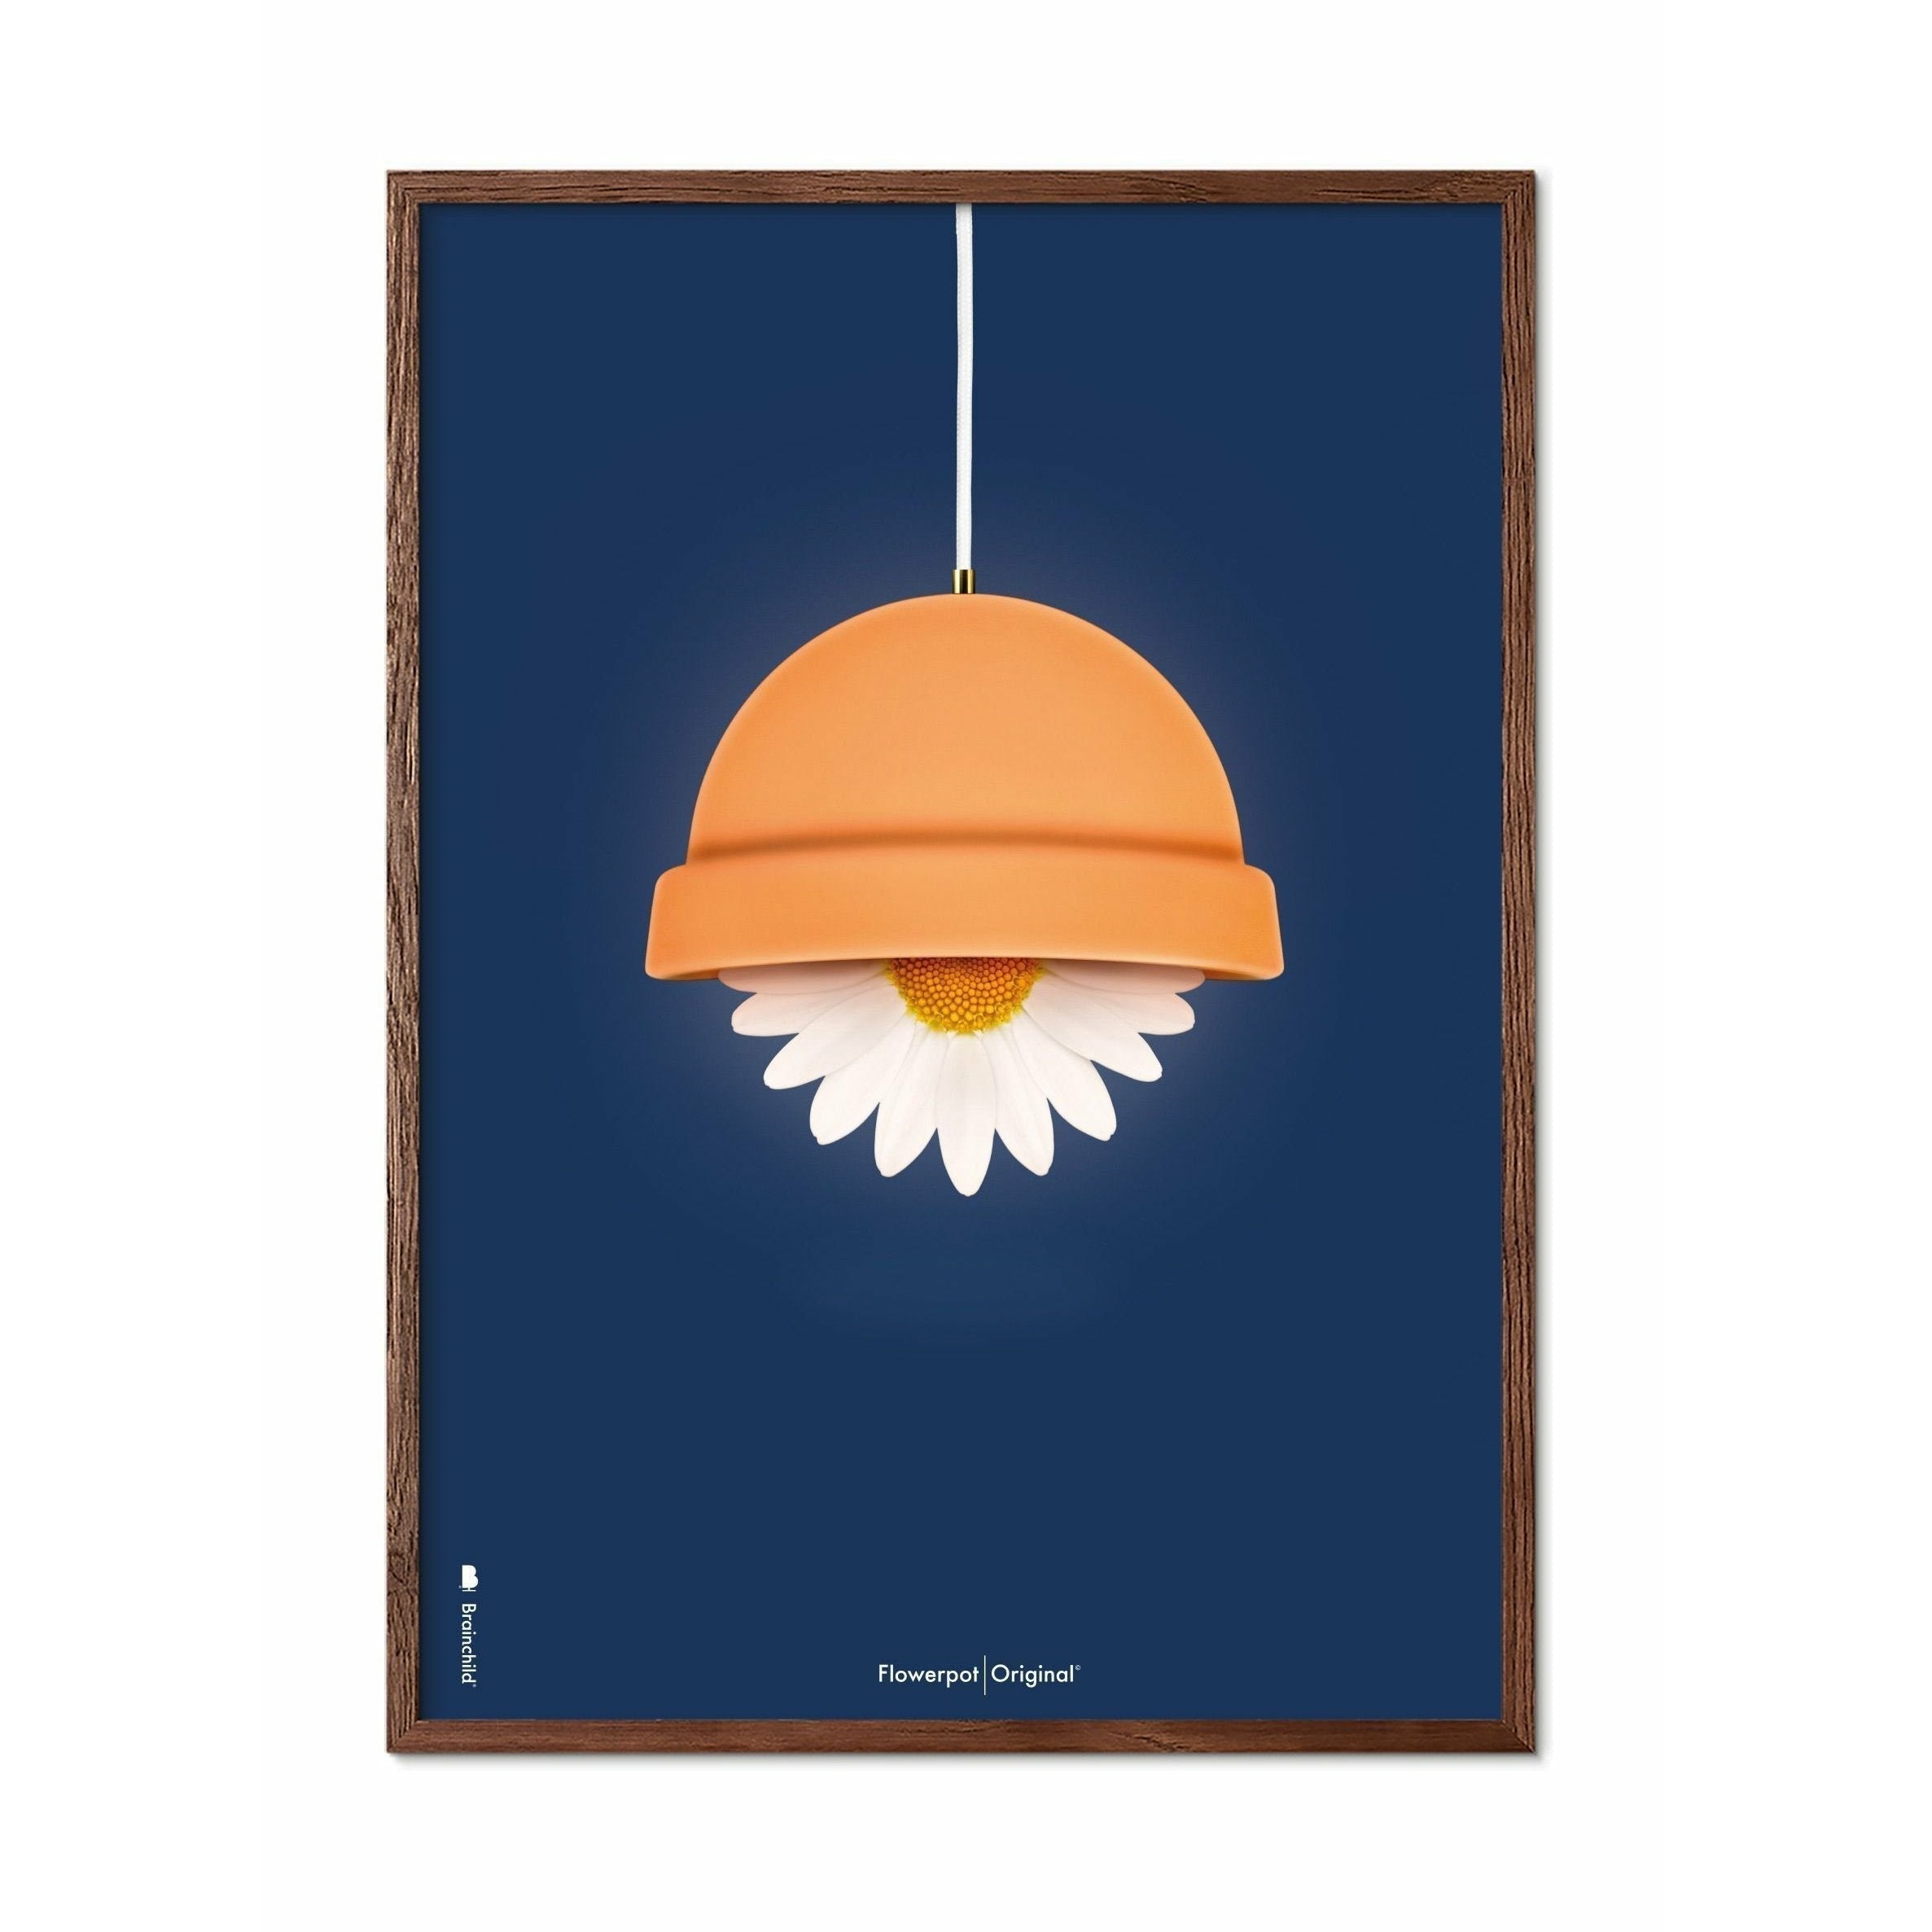 Brainchild Flowerpot Klassisk Plakat, Ramme I Mørkt Træ 50X70 Cm, Mørkeblå Baggrund